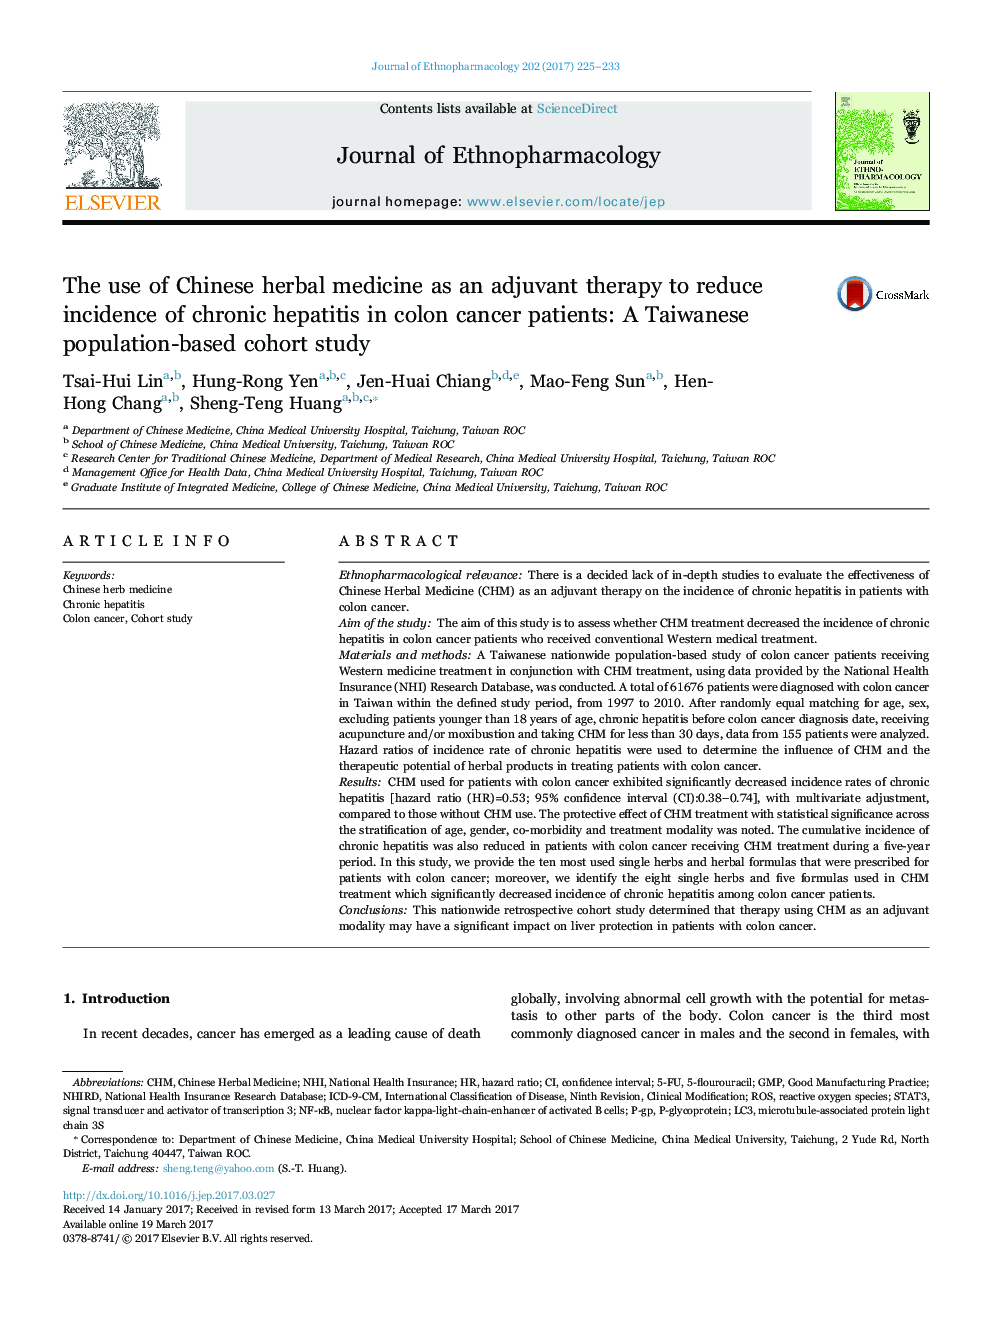 استفاده از طب گیاهی چینی به عنوان یک درمان کمکی برای کاهش بروز ابتلا به هپاتیت مزمن در بیماران مبتلا به سرطان کولون: یک مطالعه همگروه در تایوان 